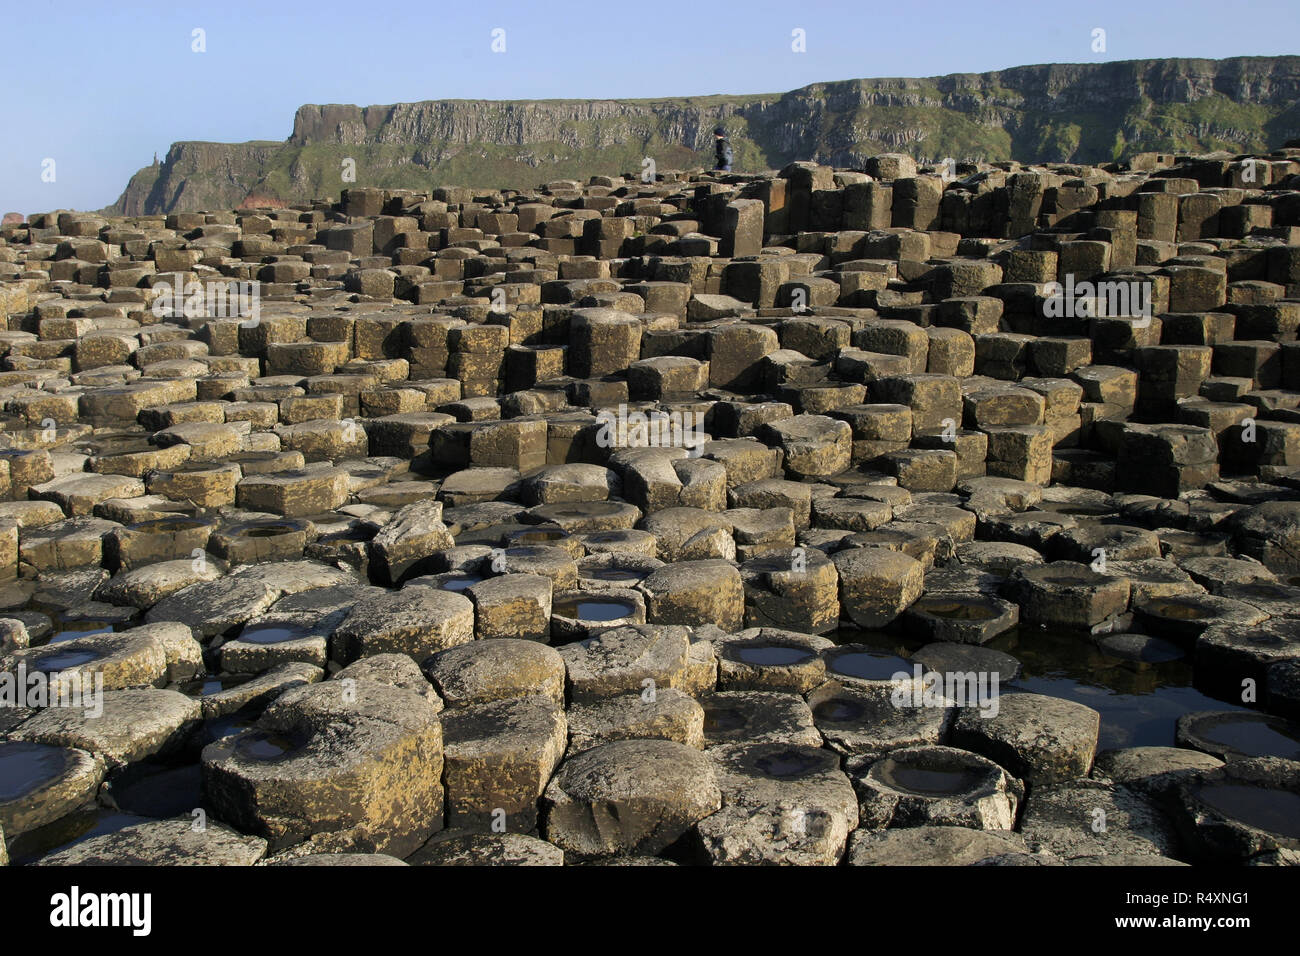 Questo è solo alcuni dei 40.000, incastro, colonne di basalto che compongono il Giants Causeway nella contea di Antrim, Irlanda del Nord. Questa magnifica struttura geologica è il risultato di un'enorme eruzione vulcanica molti e molti anni fa e che è un sito Patrimonio Mondiale dell'Unesco ed è visitato da centinaia di migliaia di turisti e visitatori ogni anno. Foto Stock